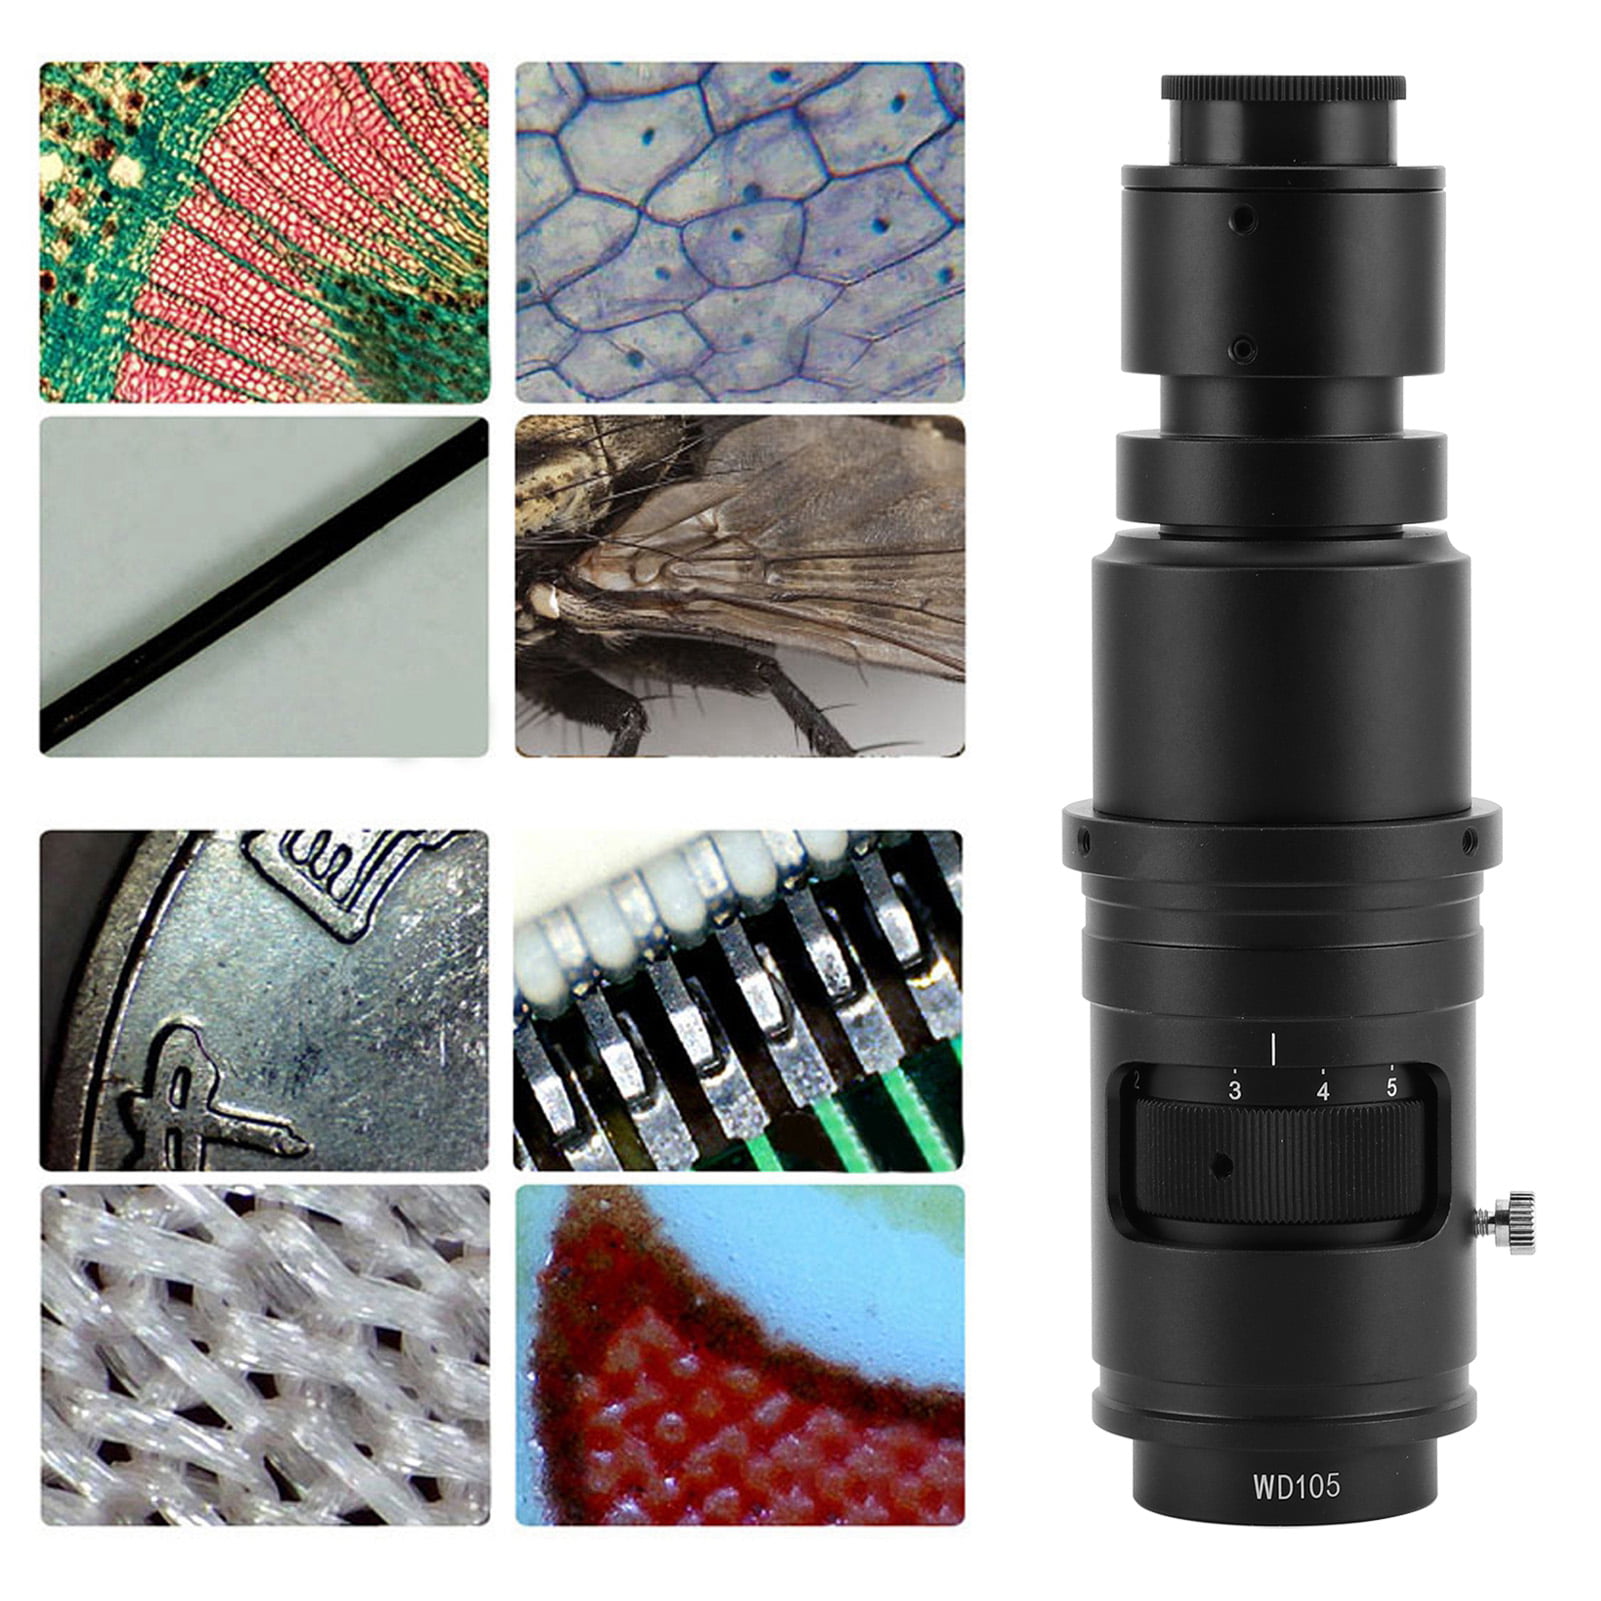 C‑Mount Lens Zoom Lens 0.7X‑5X C‑Mount 26X‑182X KP‑0750L Industrial Microscope Lens for Industrial Microscope 